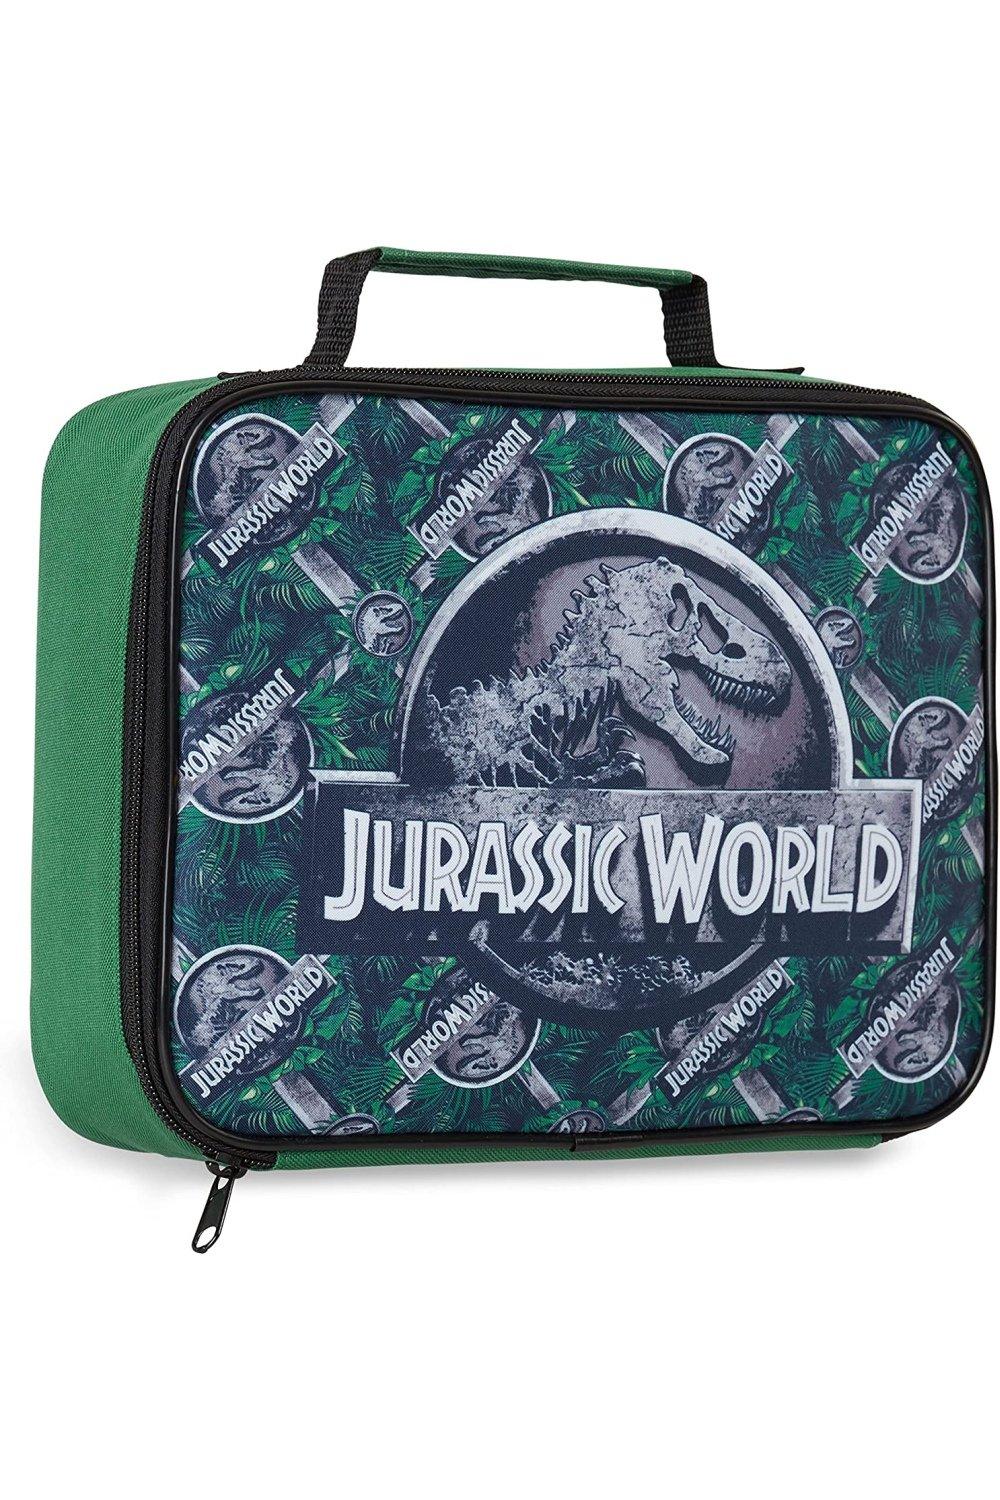 Сумка для обеда динозавров Jurassic World, мультиколор изолированная портативная сумка для ланча сумки новый термический ланч бокс сумка тоут сумка холодильник контейнер для обеда школьные